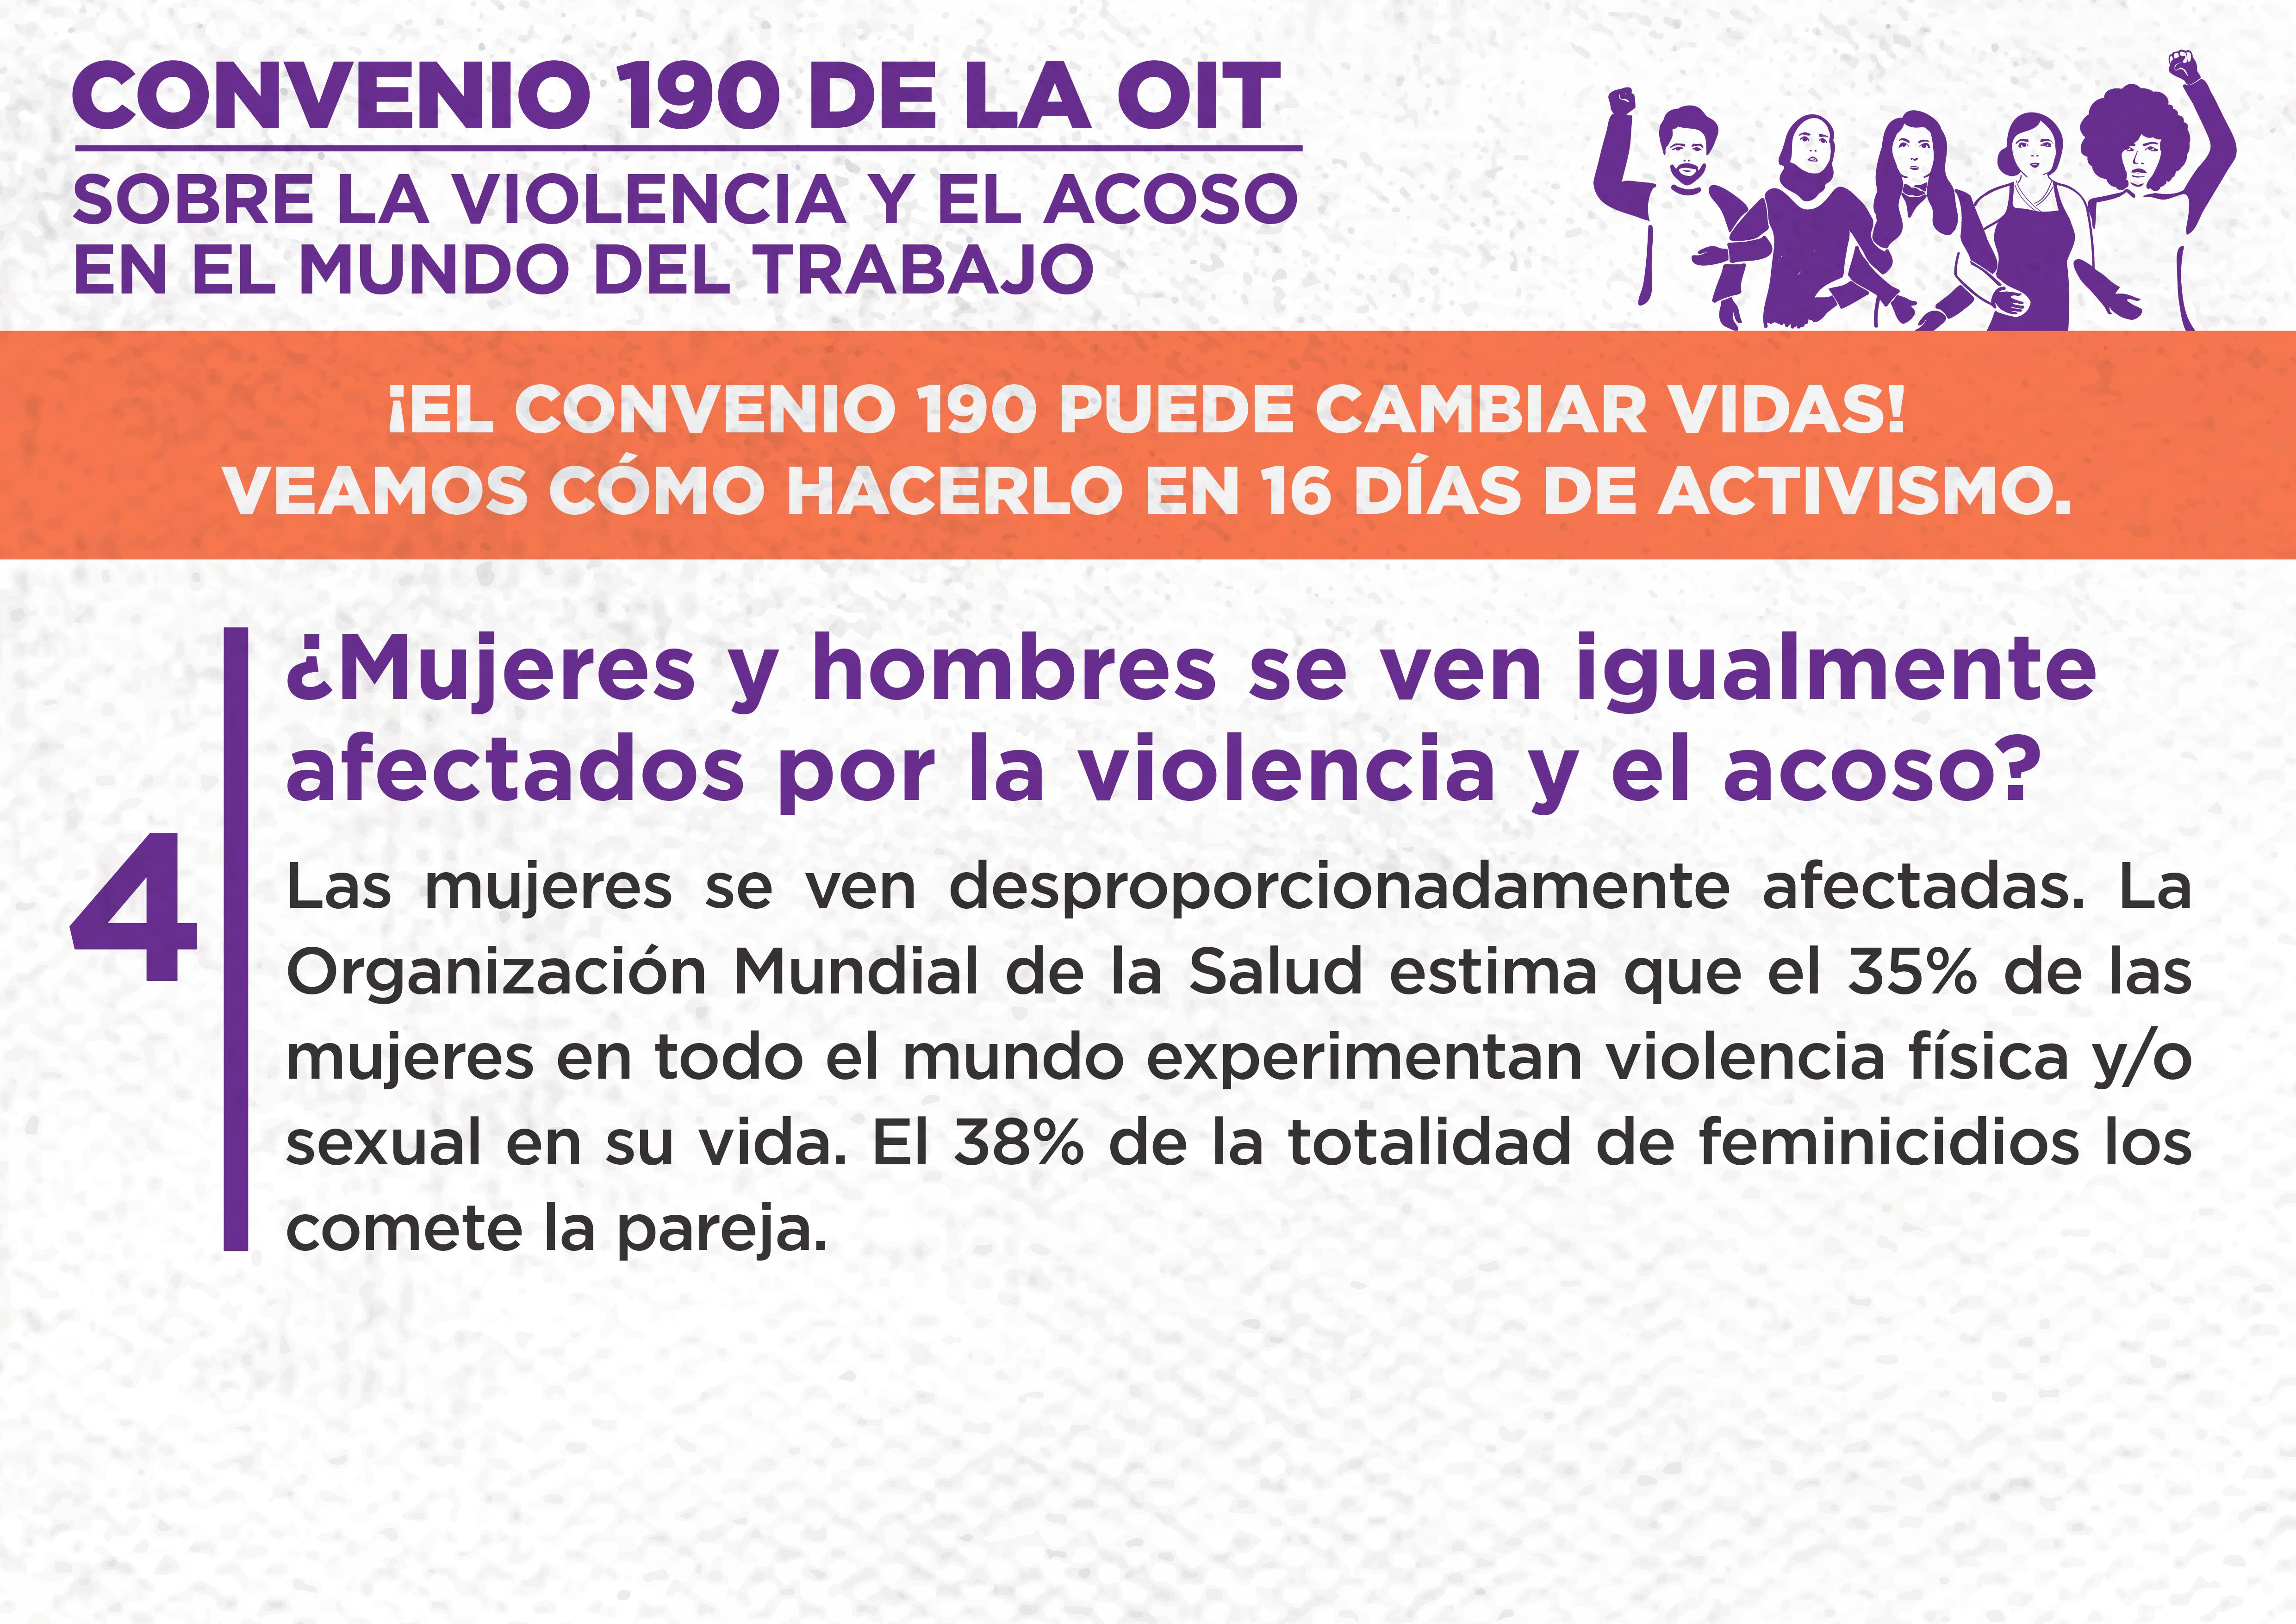 4. ¿Mujeres y hombres se ven igualmente afectados por la violencia y el acoso?